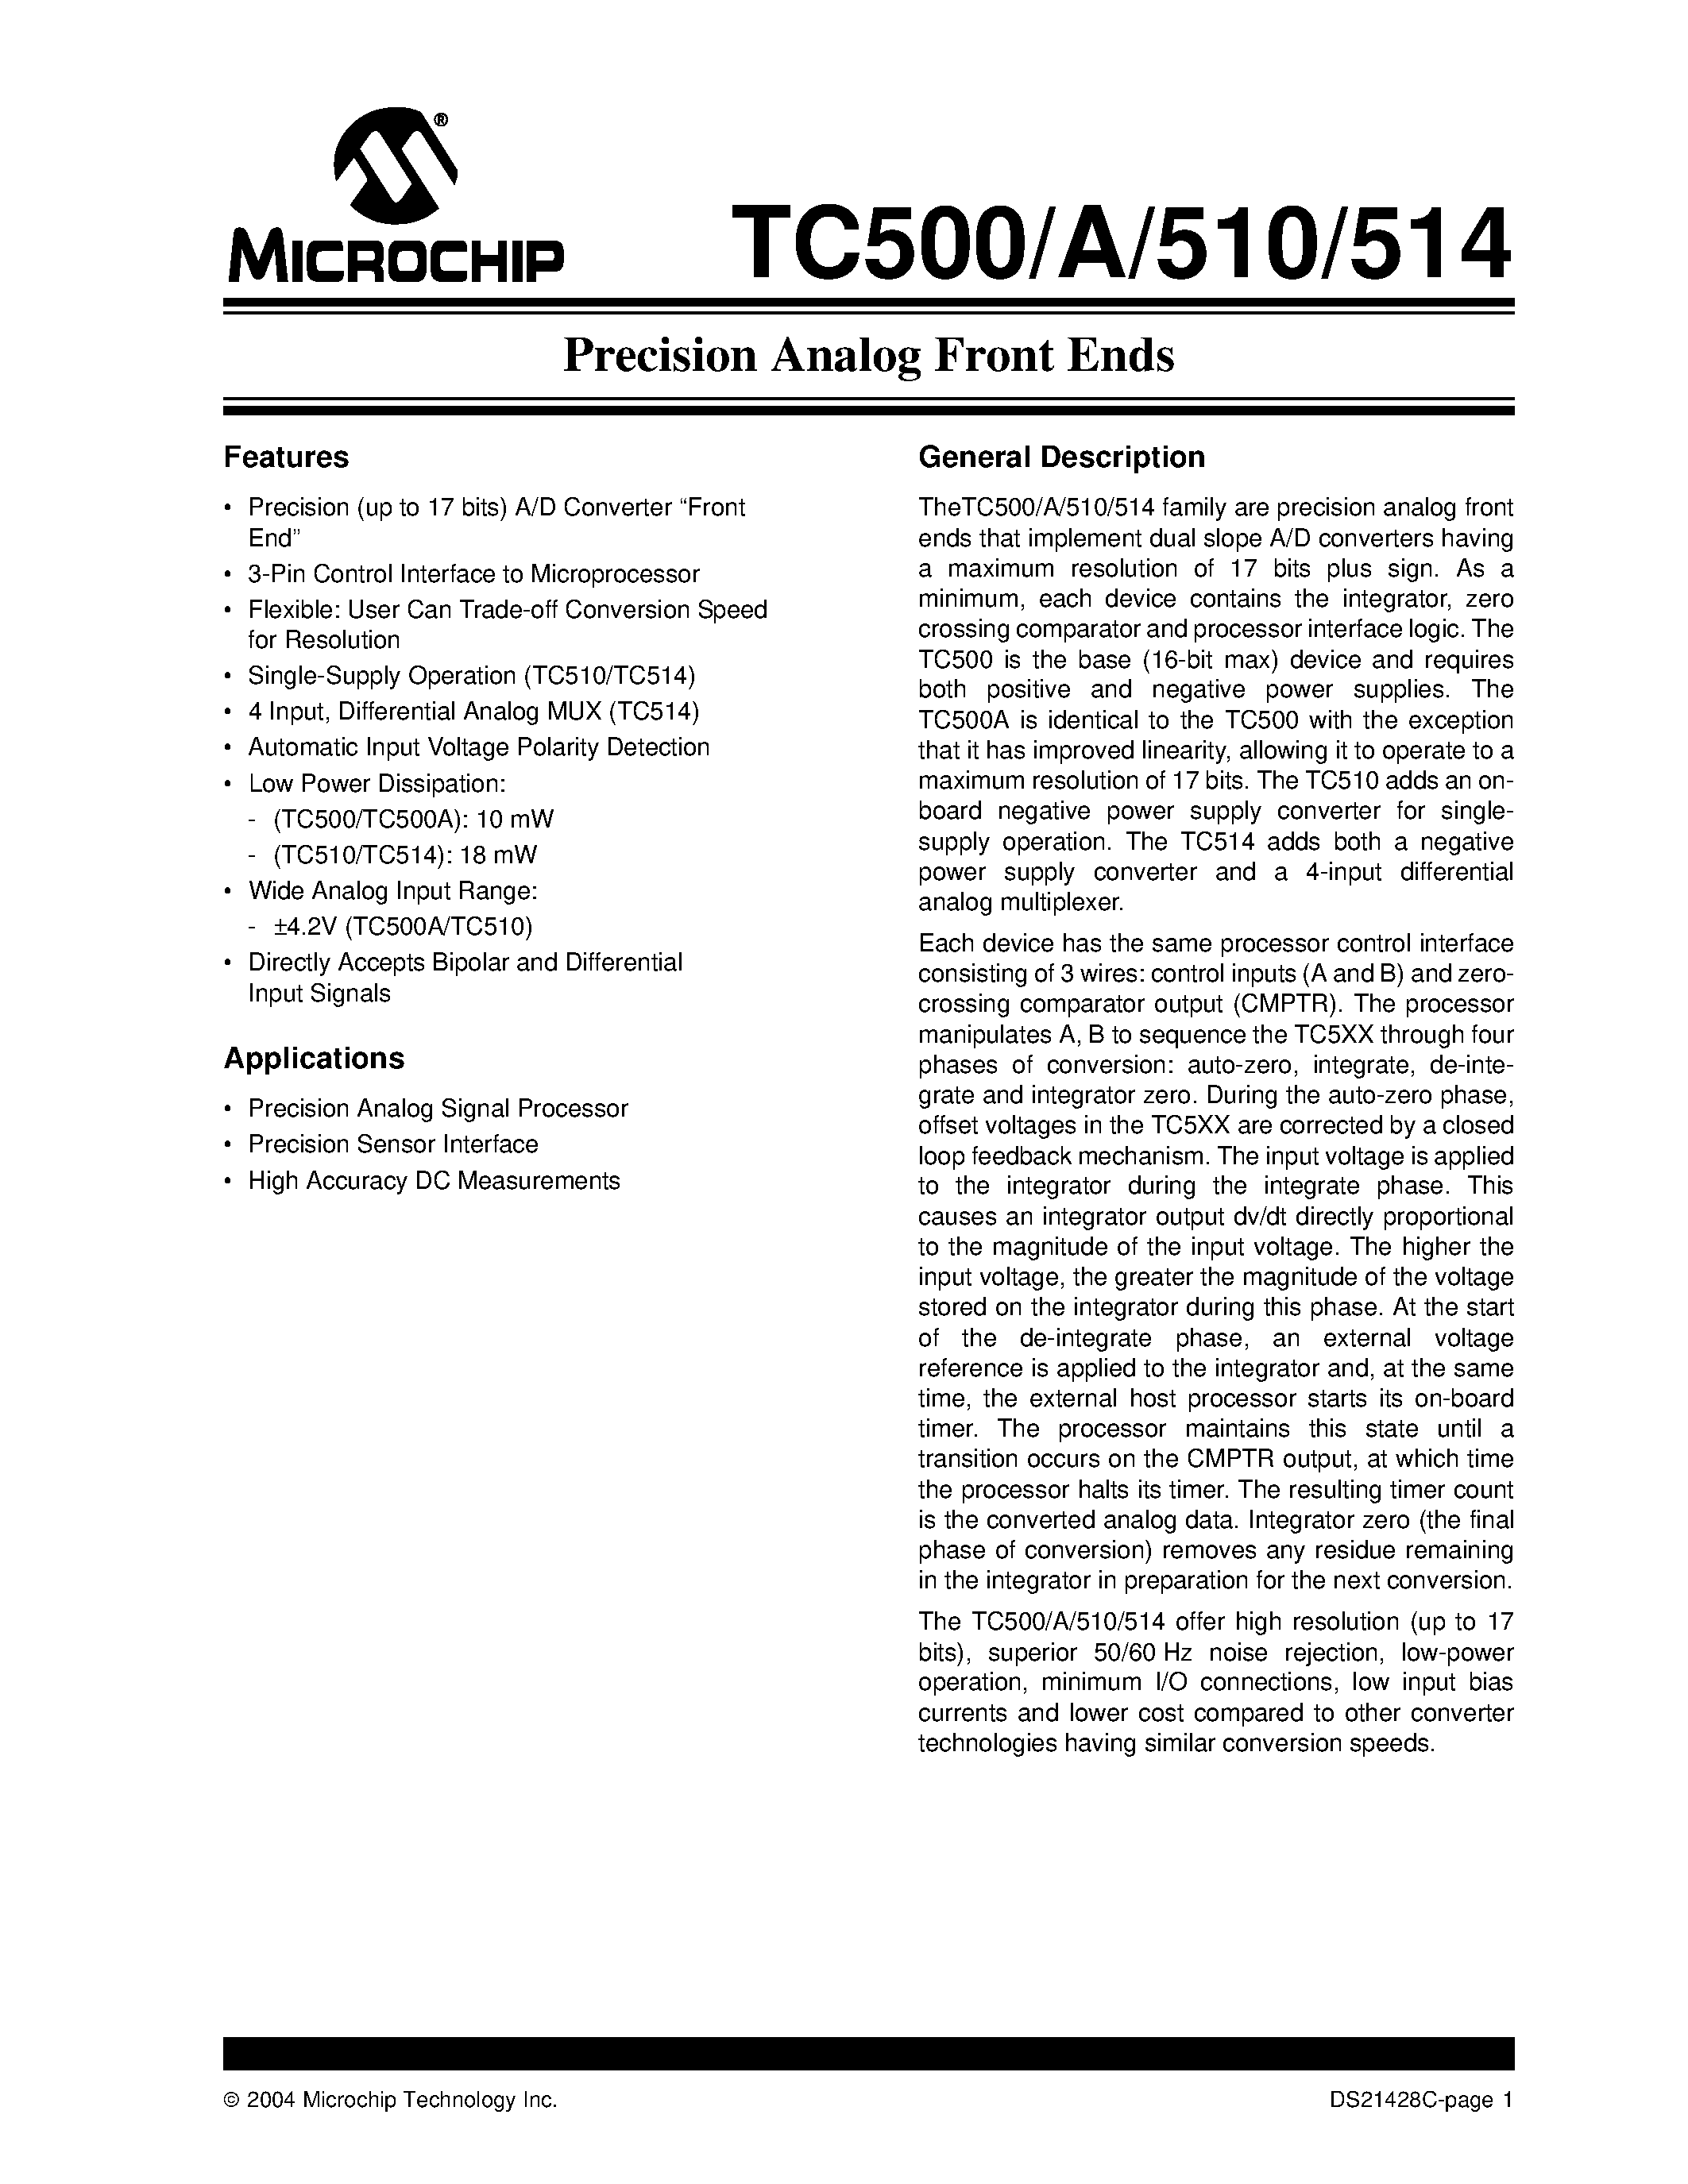 Даташит TC500 - (TC500 - TC514) Precision Analog Front Ends страница 1